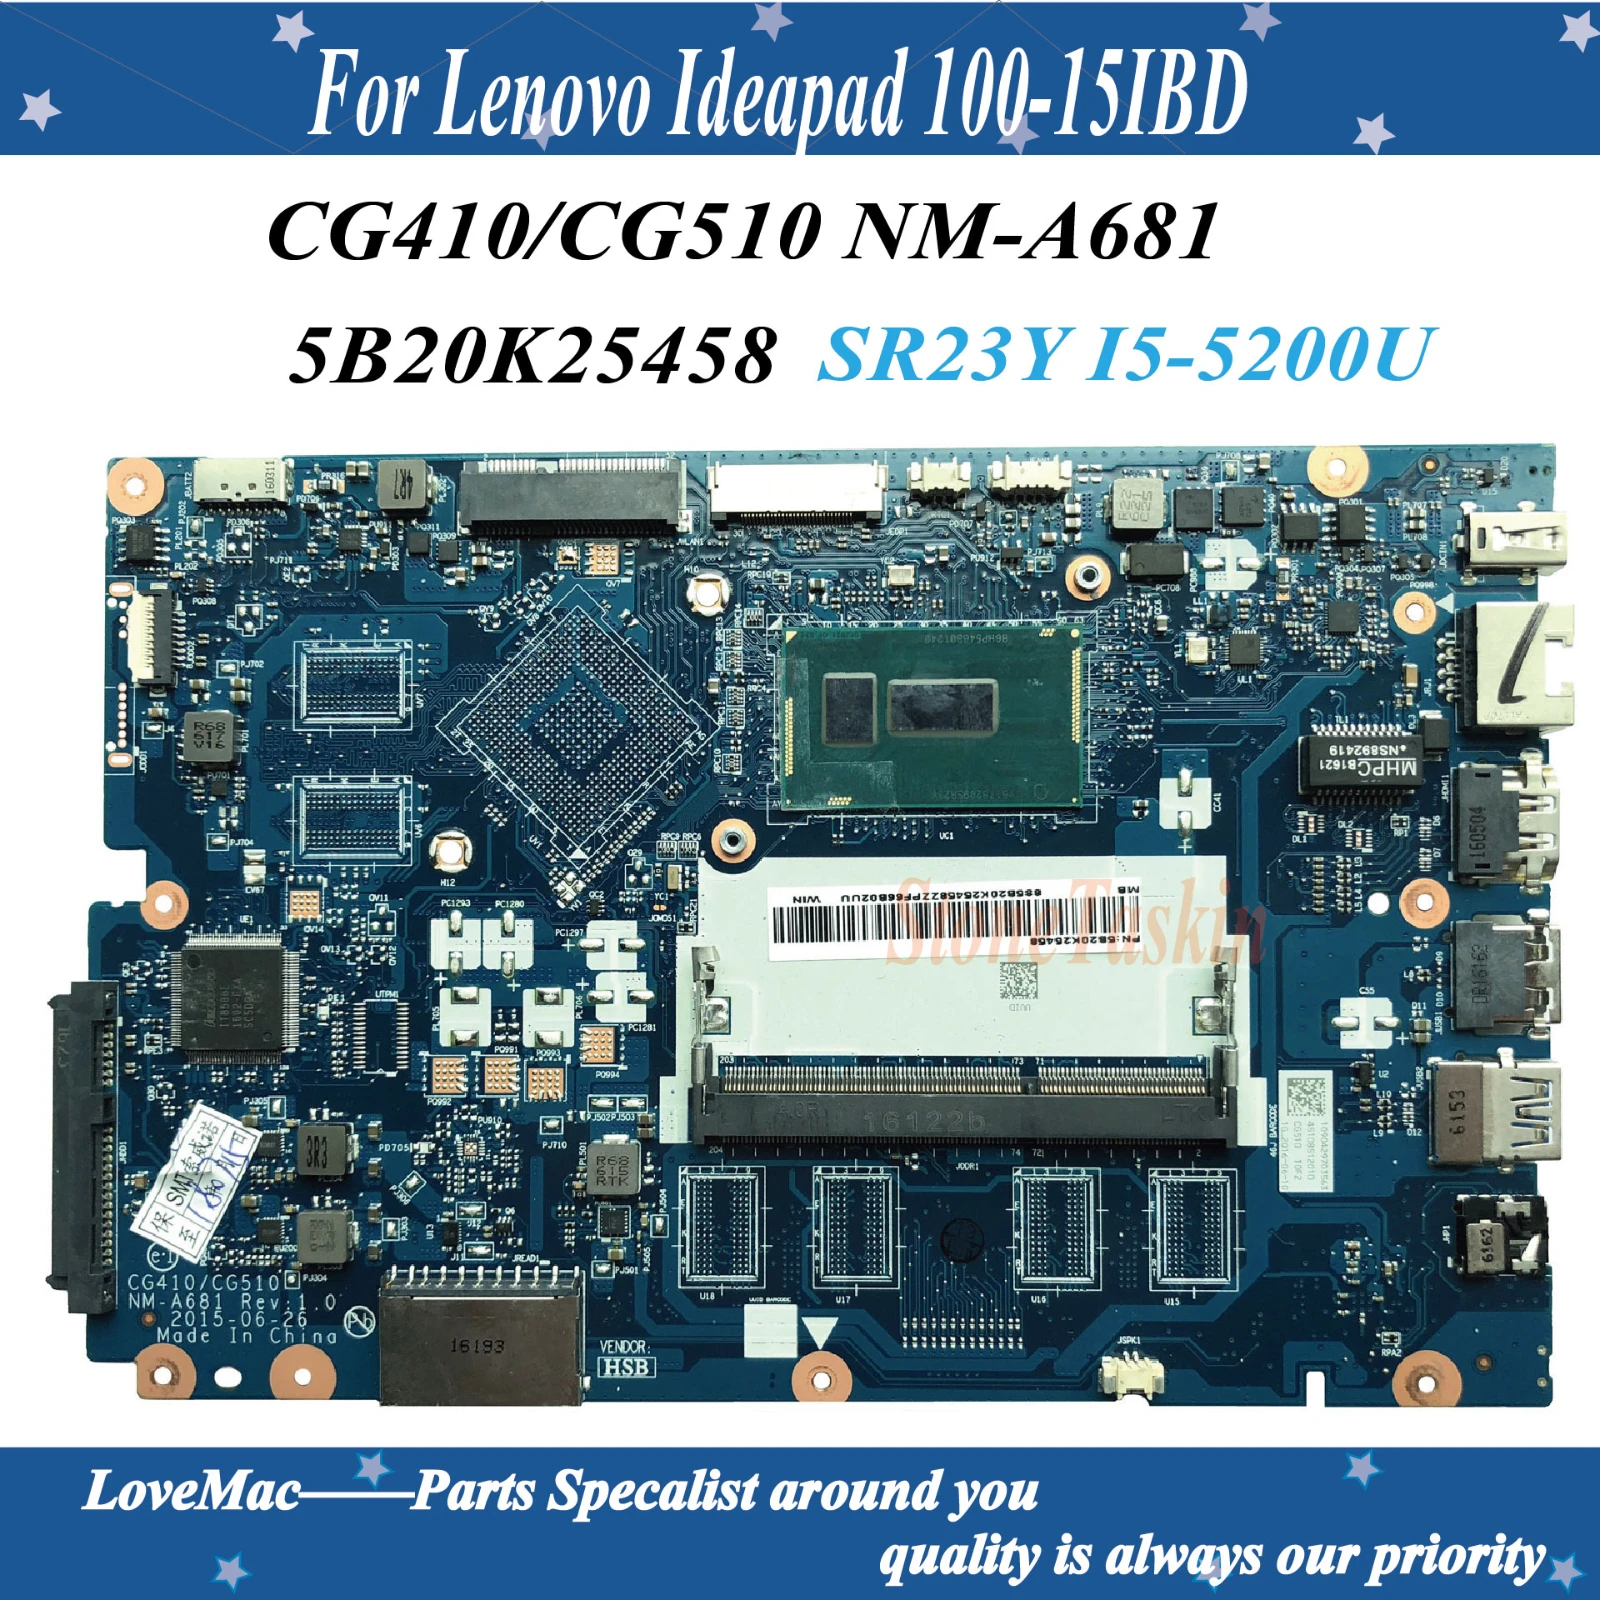 

Высококачественная материнская плата 5B20K25458 для ноутбука Lenovo Ideapad 100-15IBD SR23Y I5-5200U CG410/CG510 NM-A681 100% протестирована